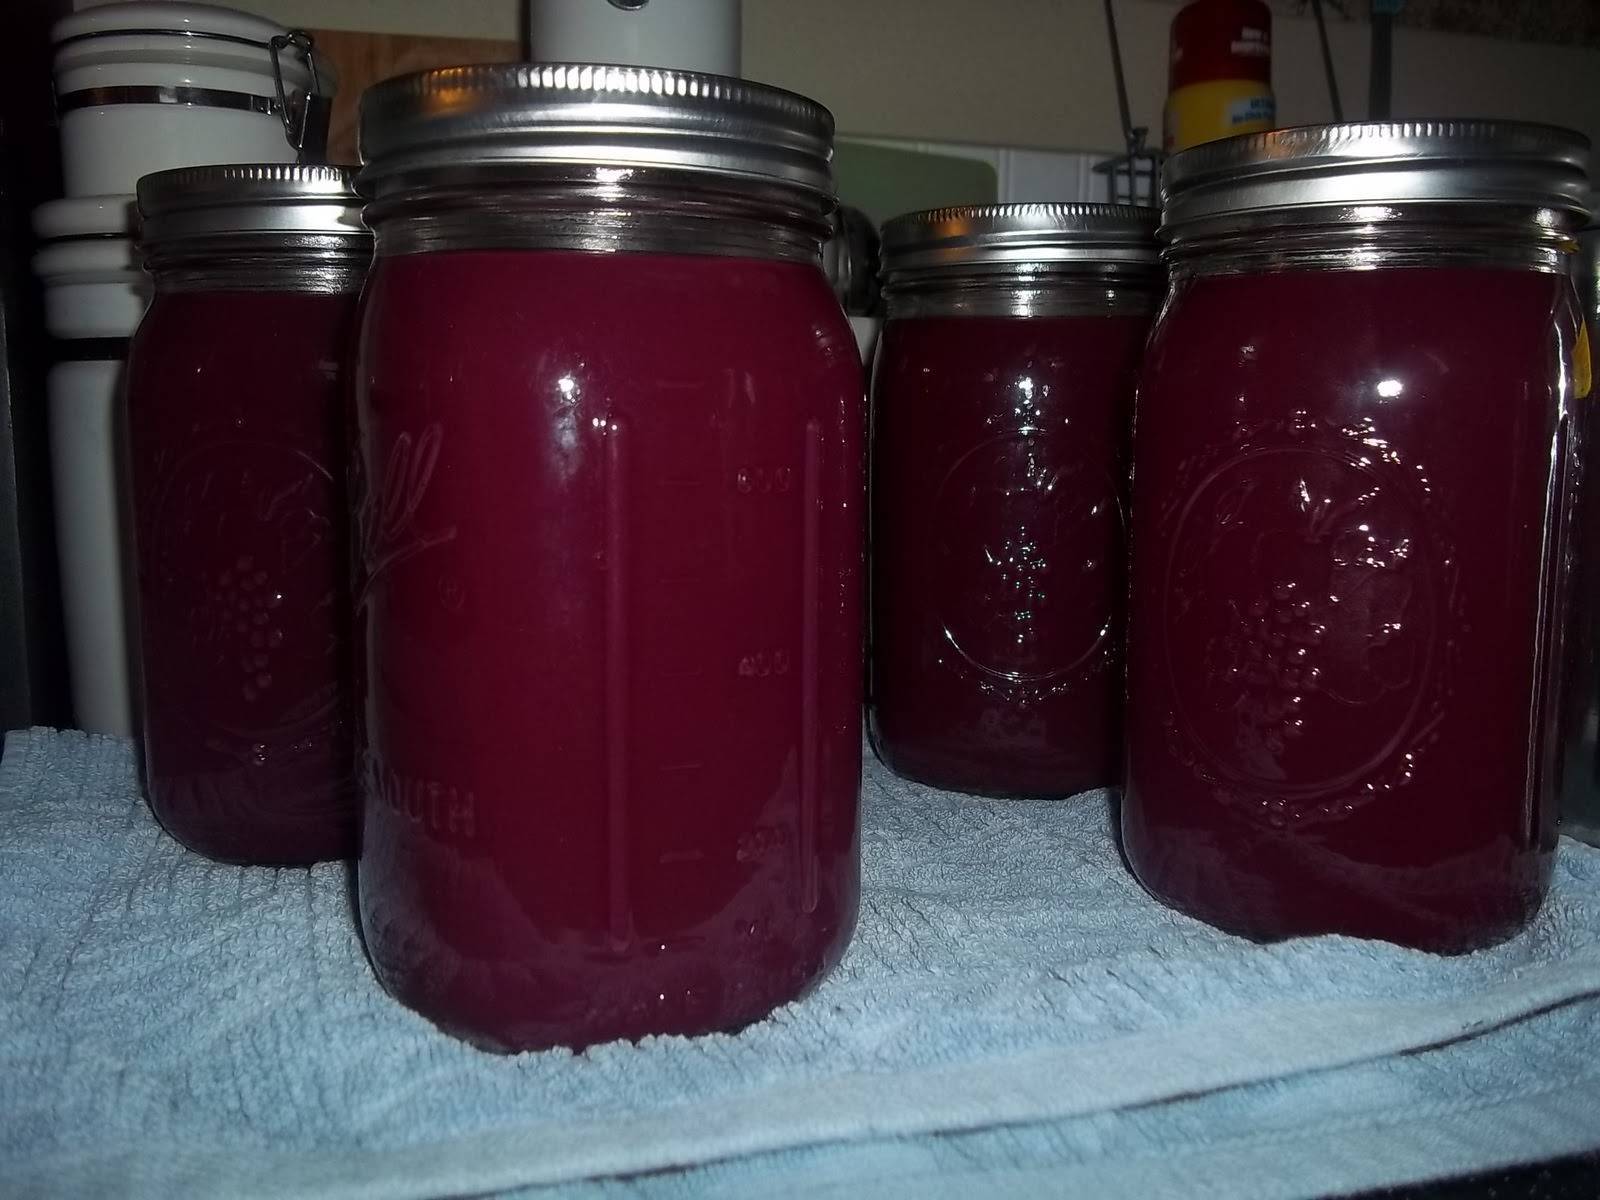 Рецепты приготовления виноградного сока на зиму в домашних условиях